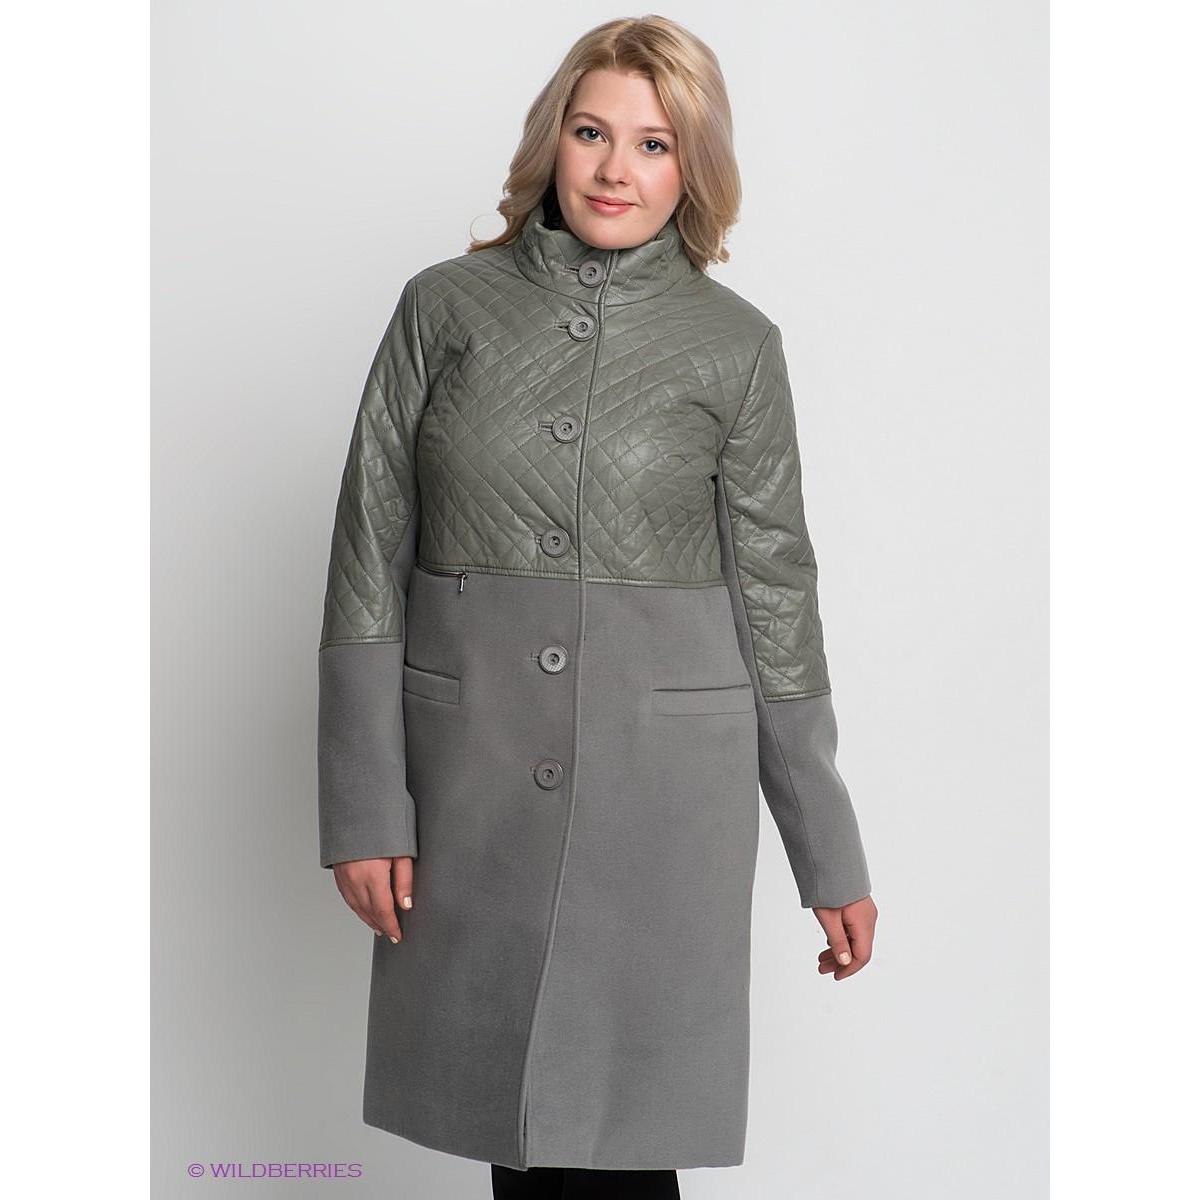 Пальто демисезонное 52 размера. Женские пальто Dimma. Пальто деми 45+. Пальто #166475 Dimma женская. Зимнее пальто для полных женщин.